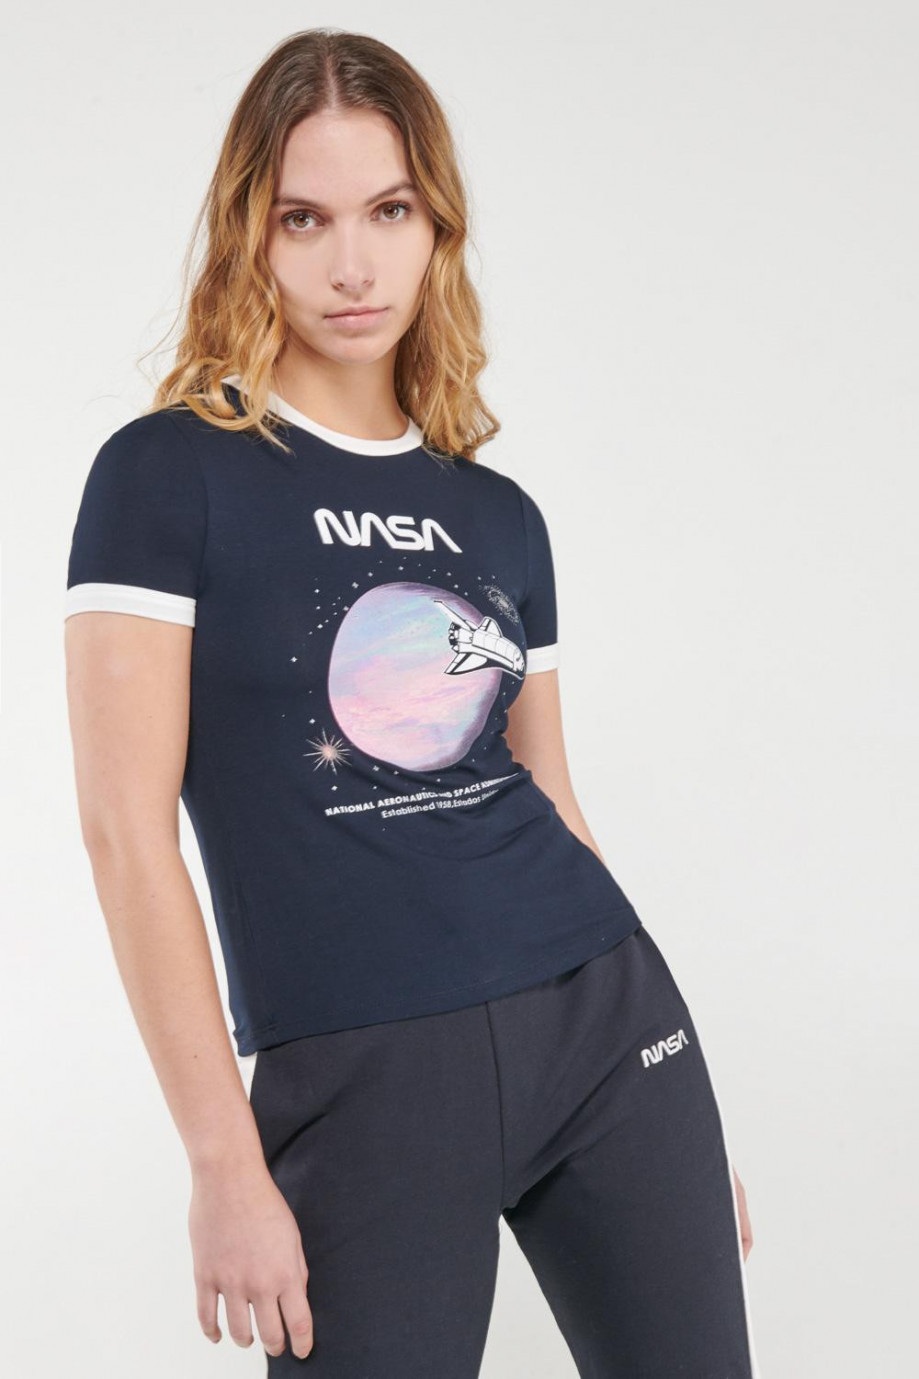 Camiseta manga corta, con cuello y puños en contraste, estampado de NASA.